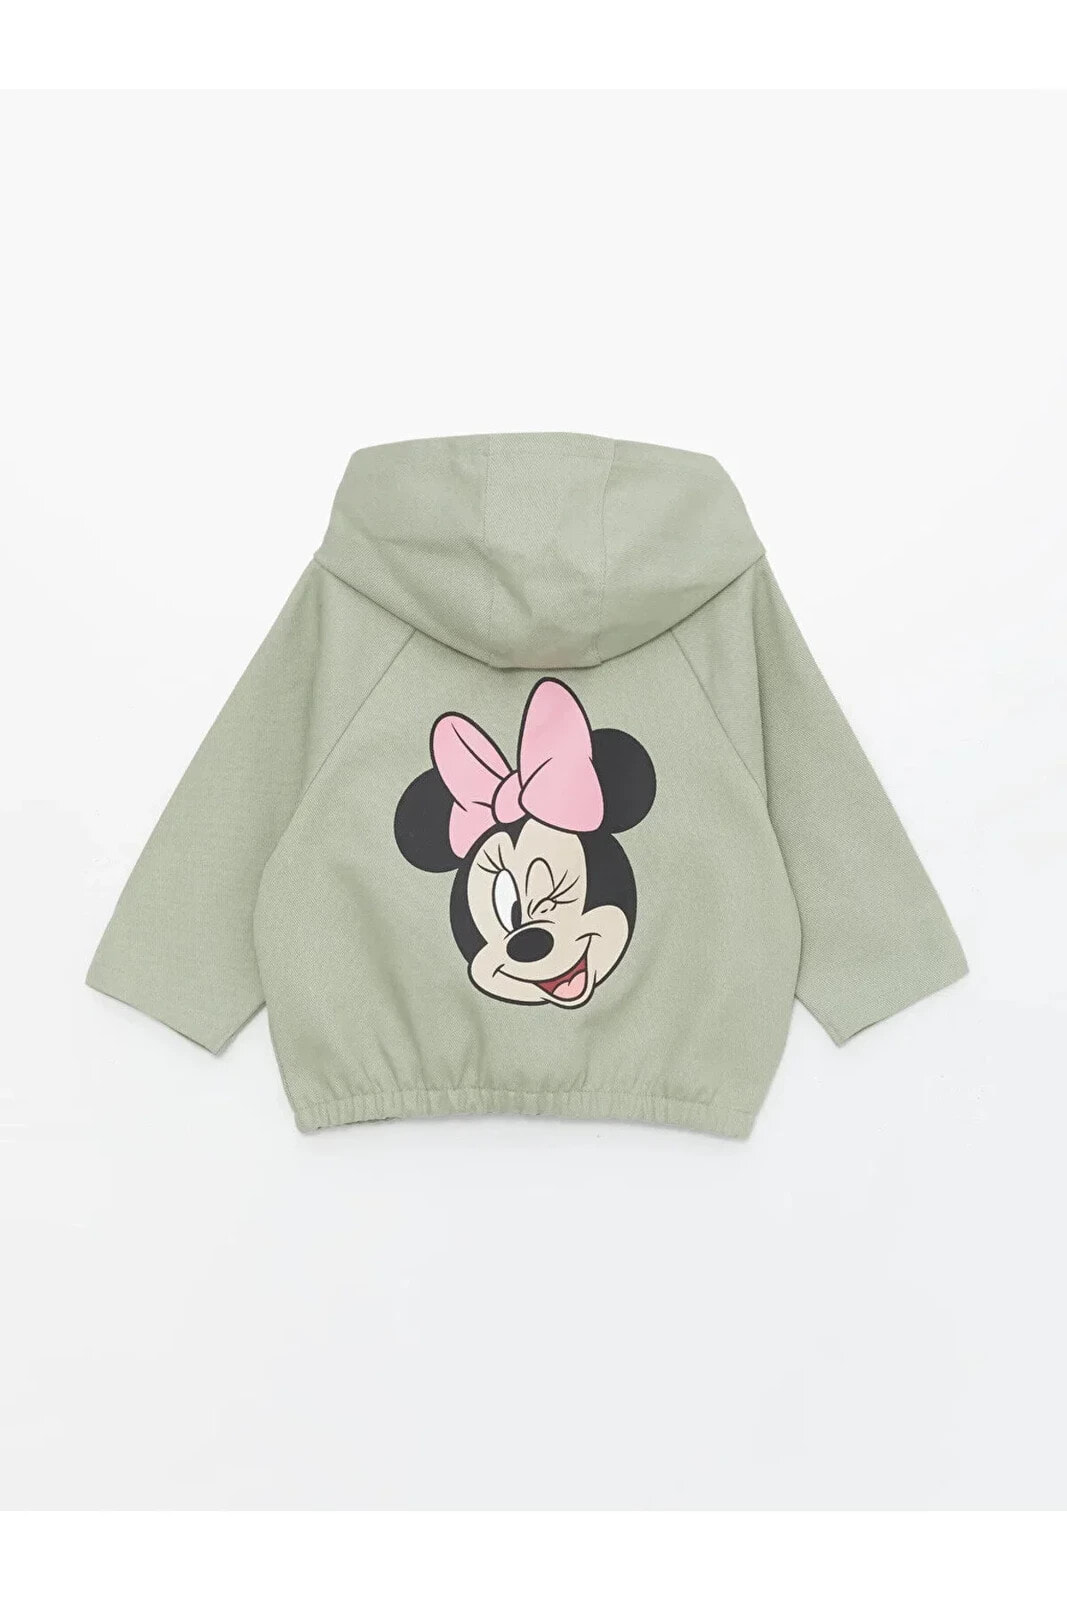 LCW baby Kapüşonlu Uzun Kollu Minnie Mouse Baskılı Kız Bebek Ceket